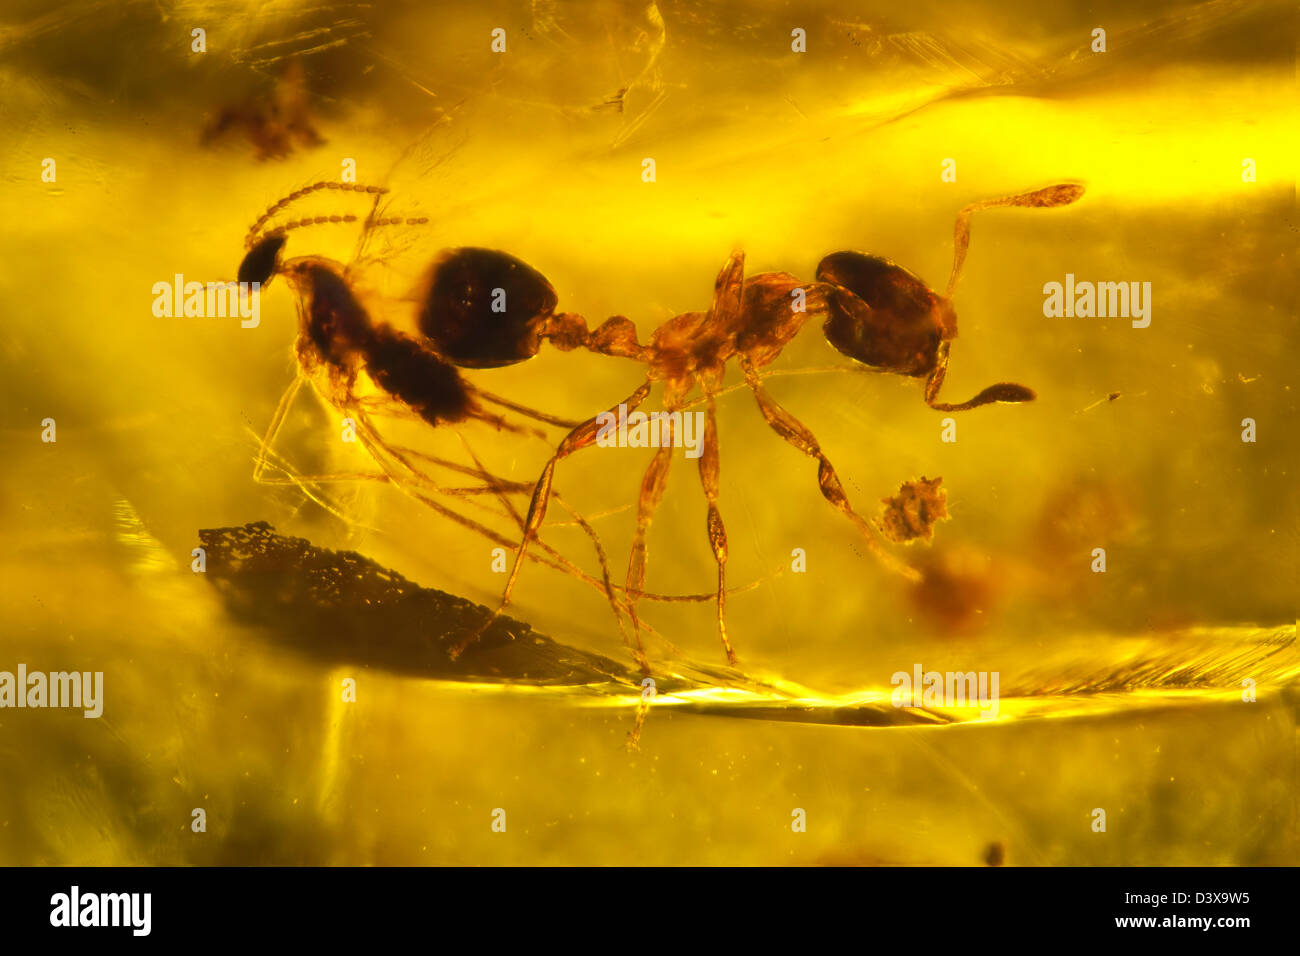 Dominikanischer Bernstein mit Insekten gefangen, Makro-Ansicht einer Ameise und Fliege Stockfoto